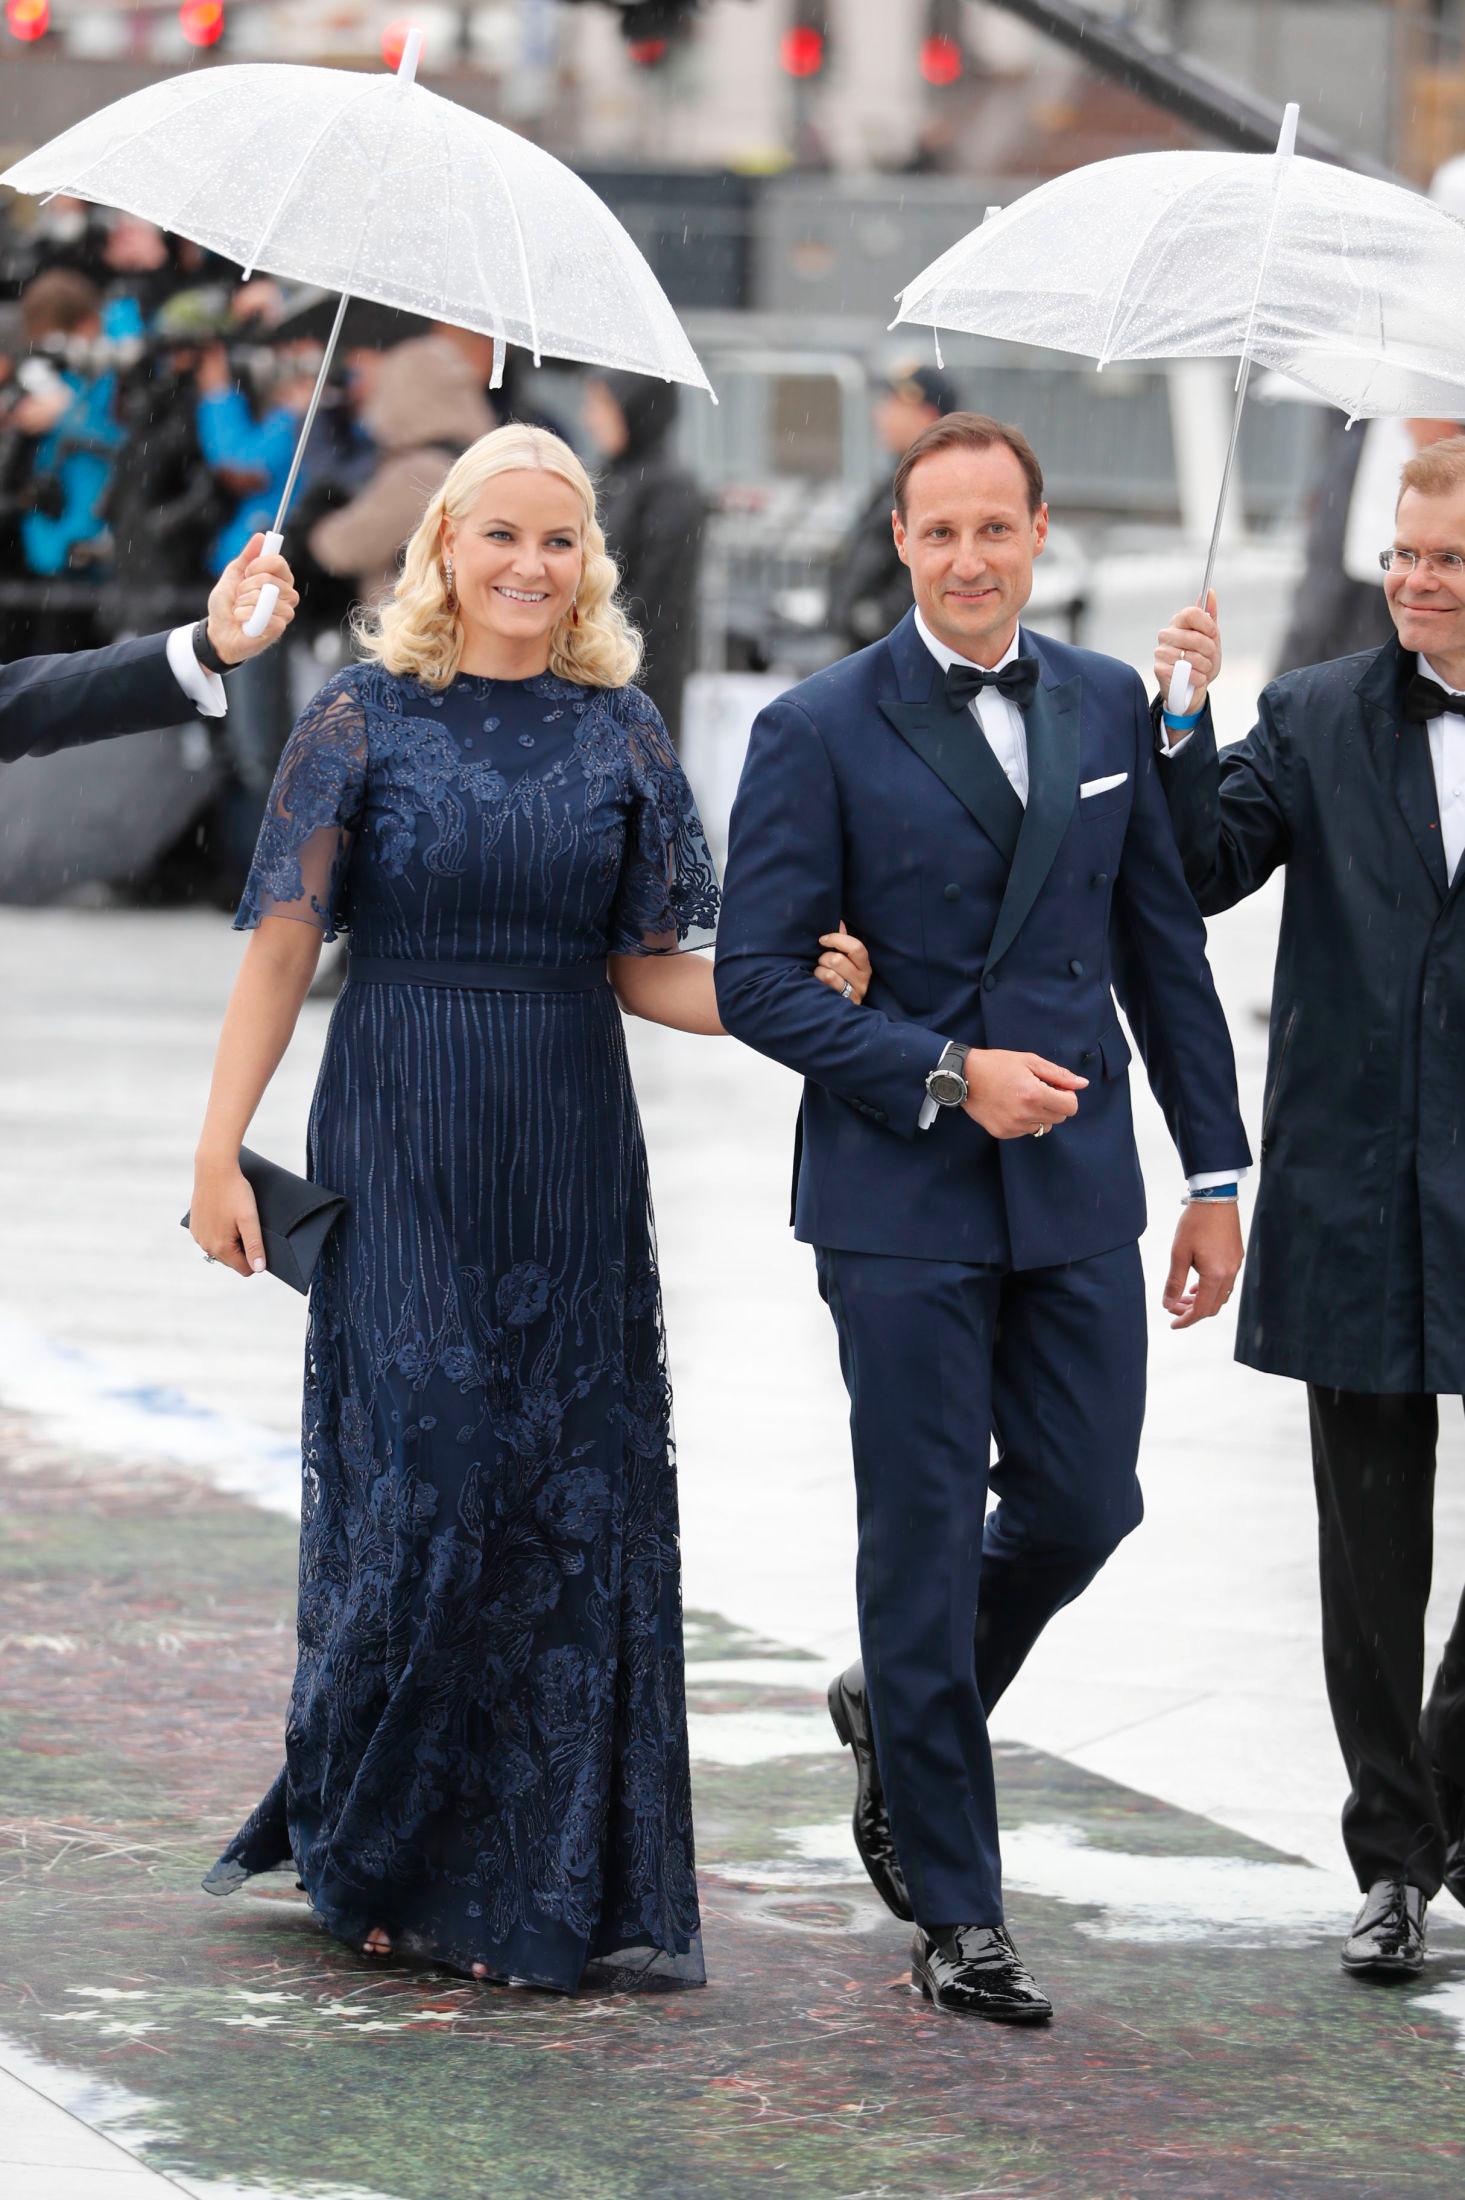 MATCHET HVERANDRE: Kronprinsesse Mette-Marit og Kronprins Haakon valgte begge mørkeblått til onsdagens festmiddag.